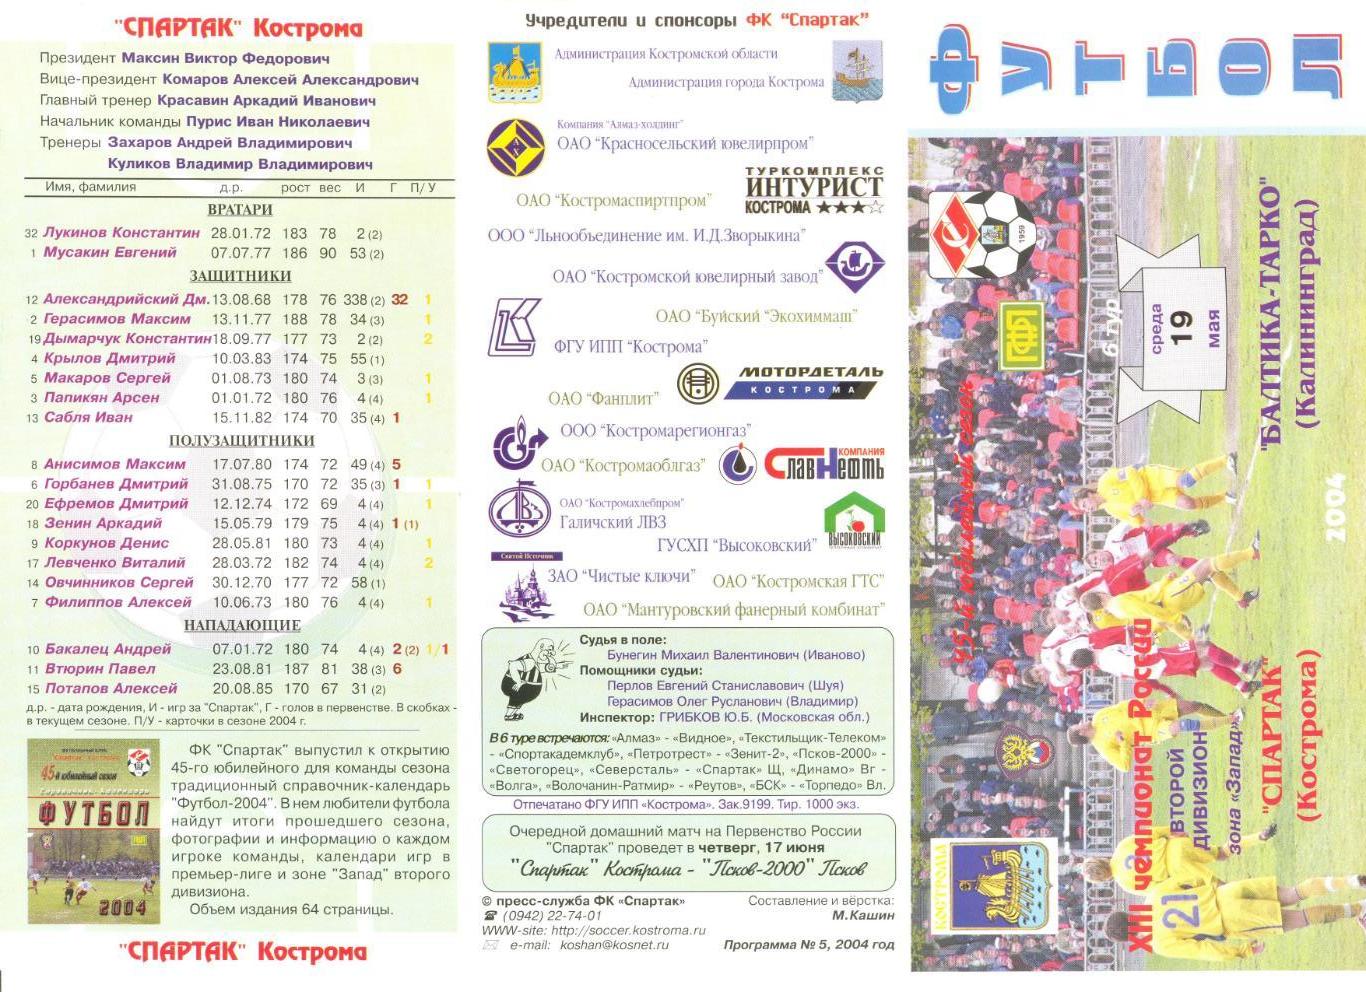 Спартак Кострома - Балтика-Тарко Калининград 19.05.2004 г.